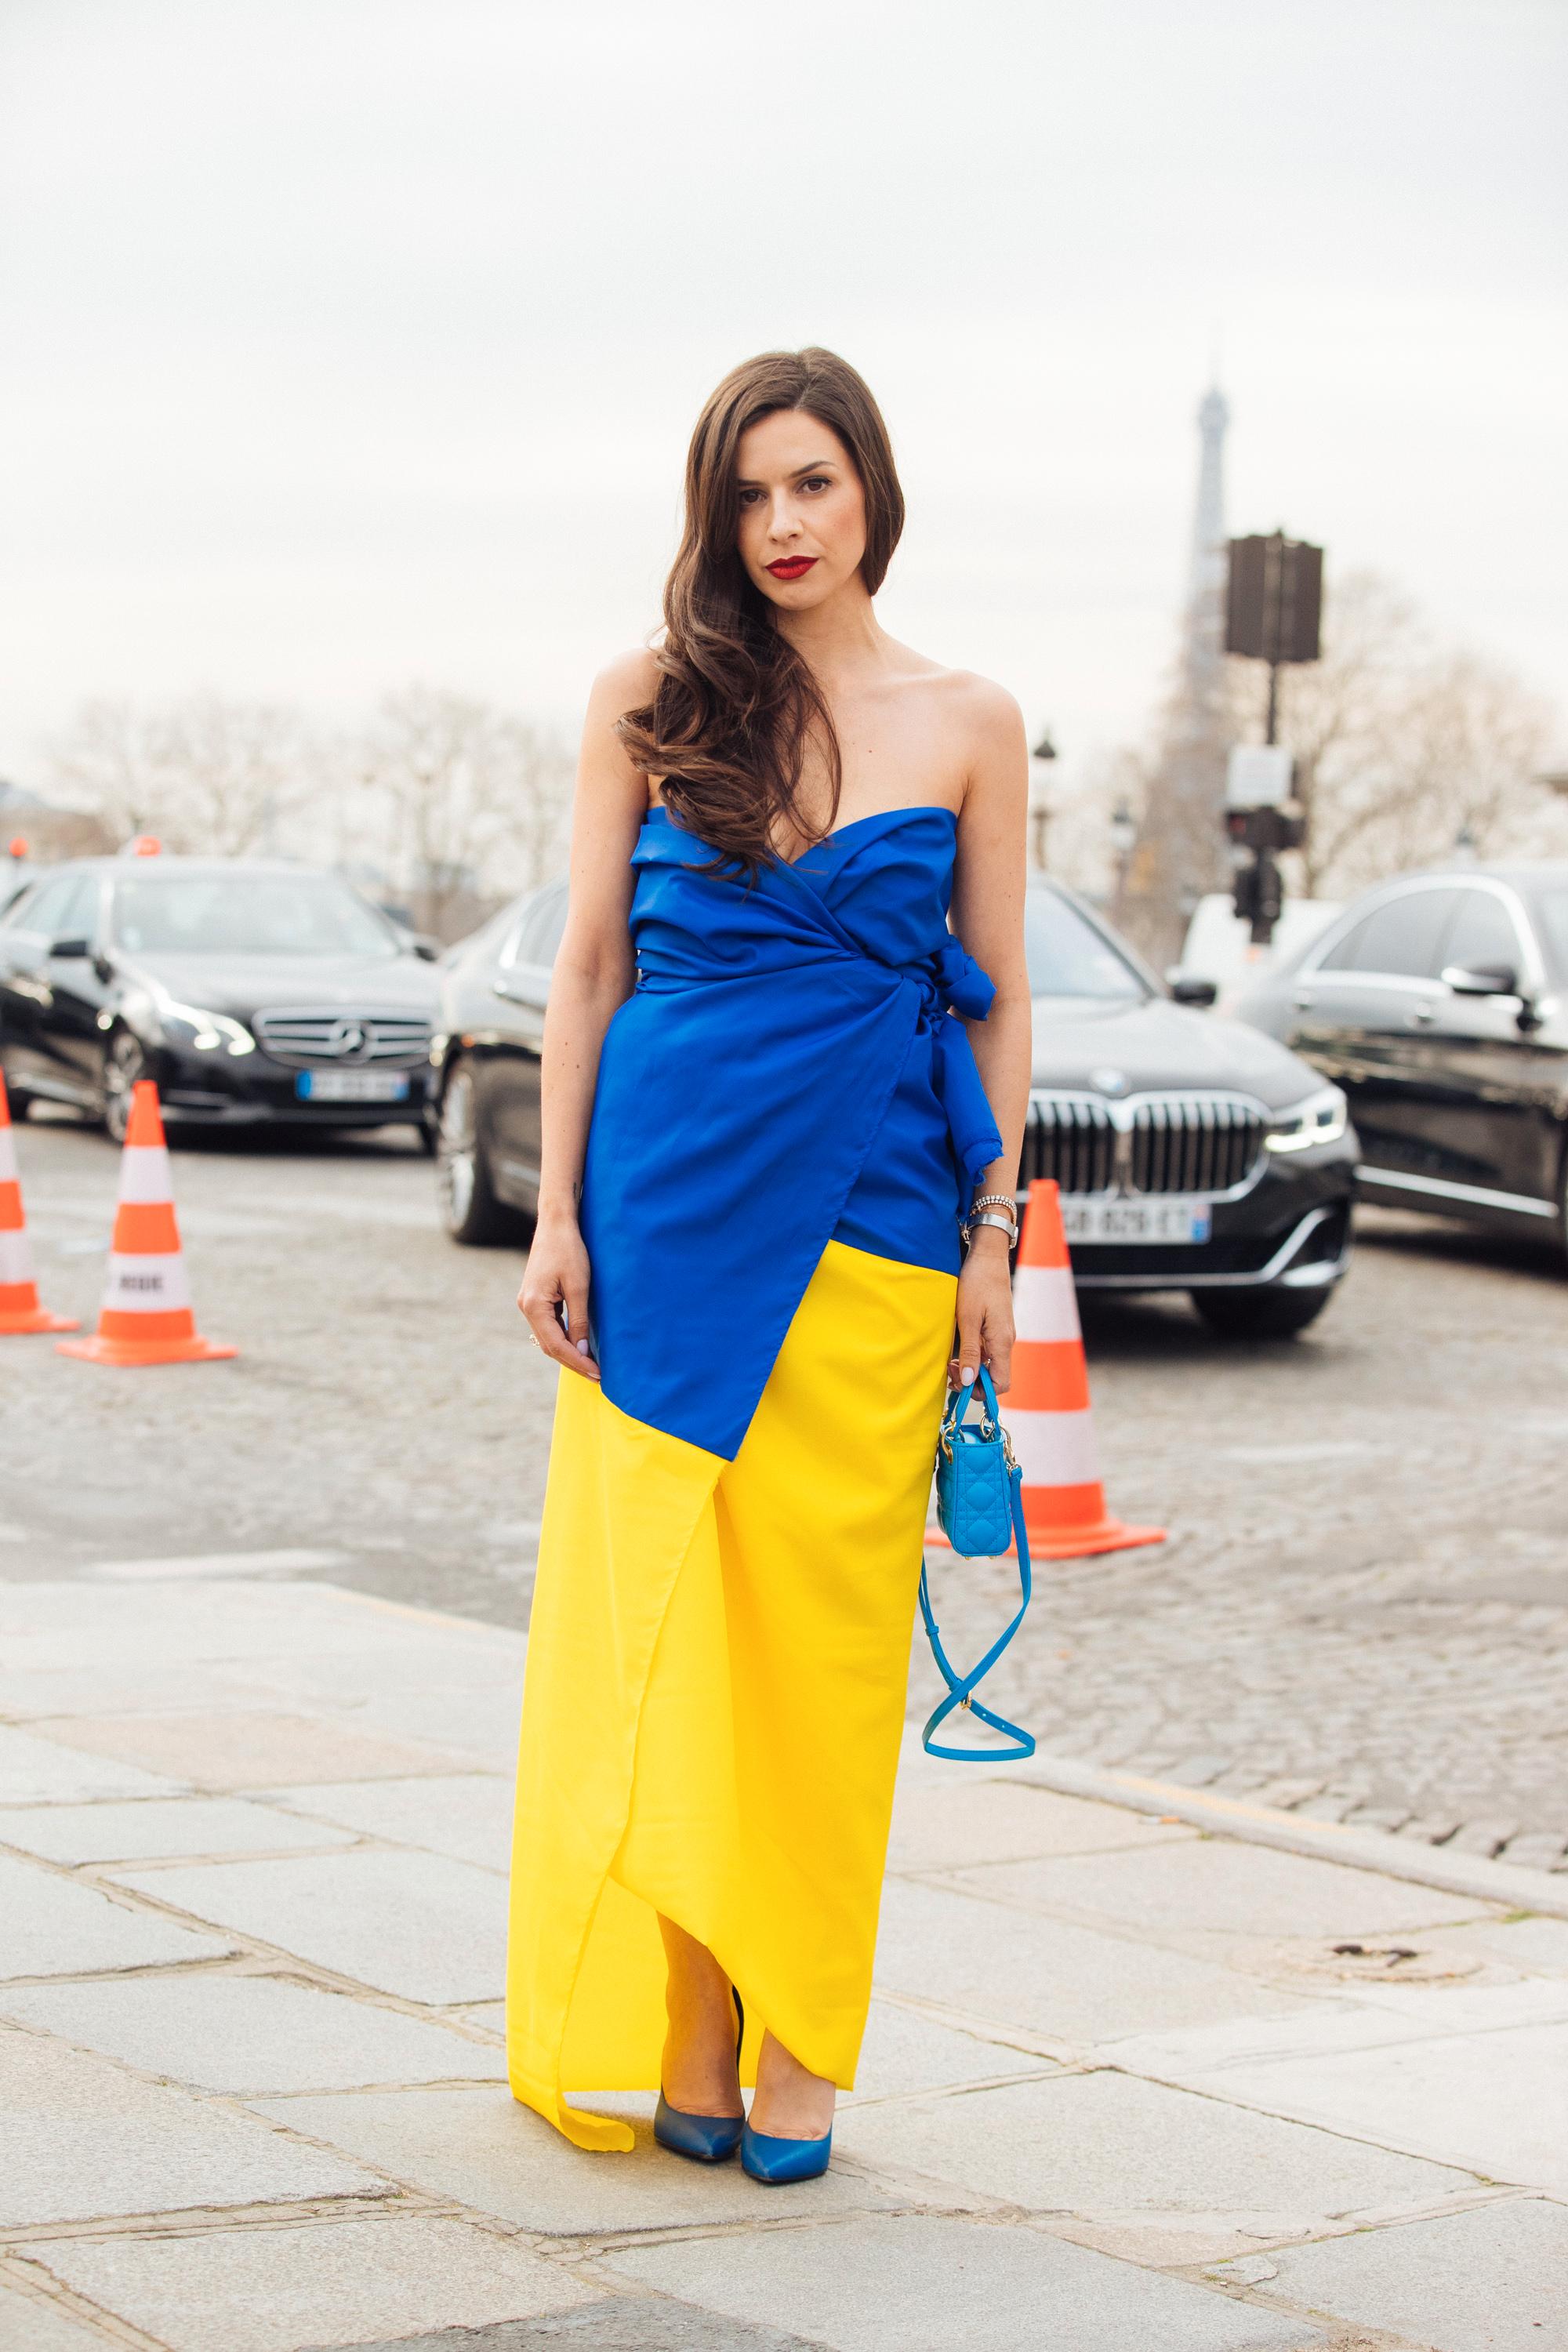 I PARIS: En moteprofil poserer utenfor Dior-visningen i en kjole i fargene til det ukrainske flagget.